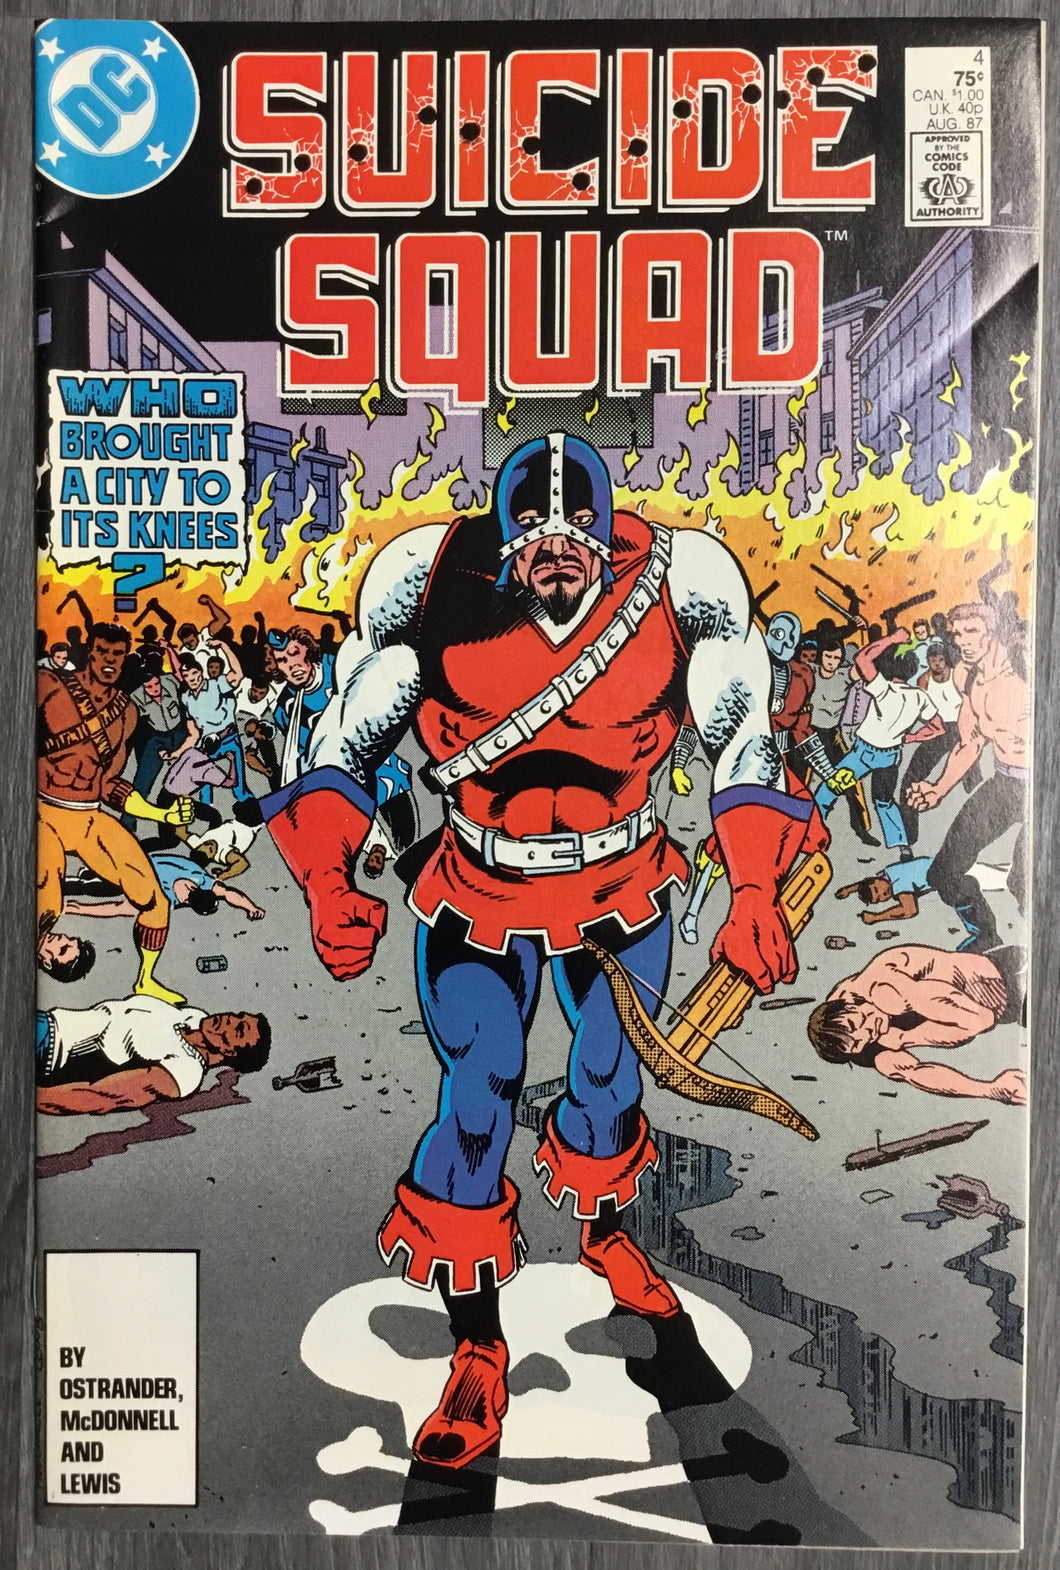 Suicide Squad No. #4 1987 DC Comics